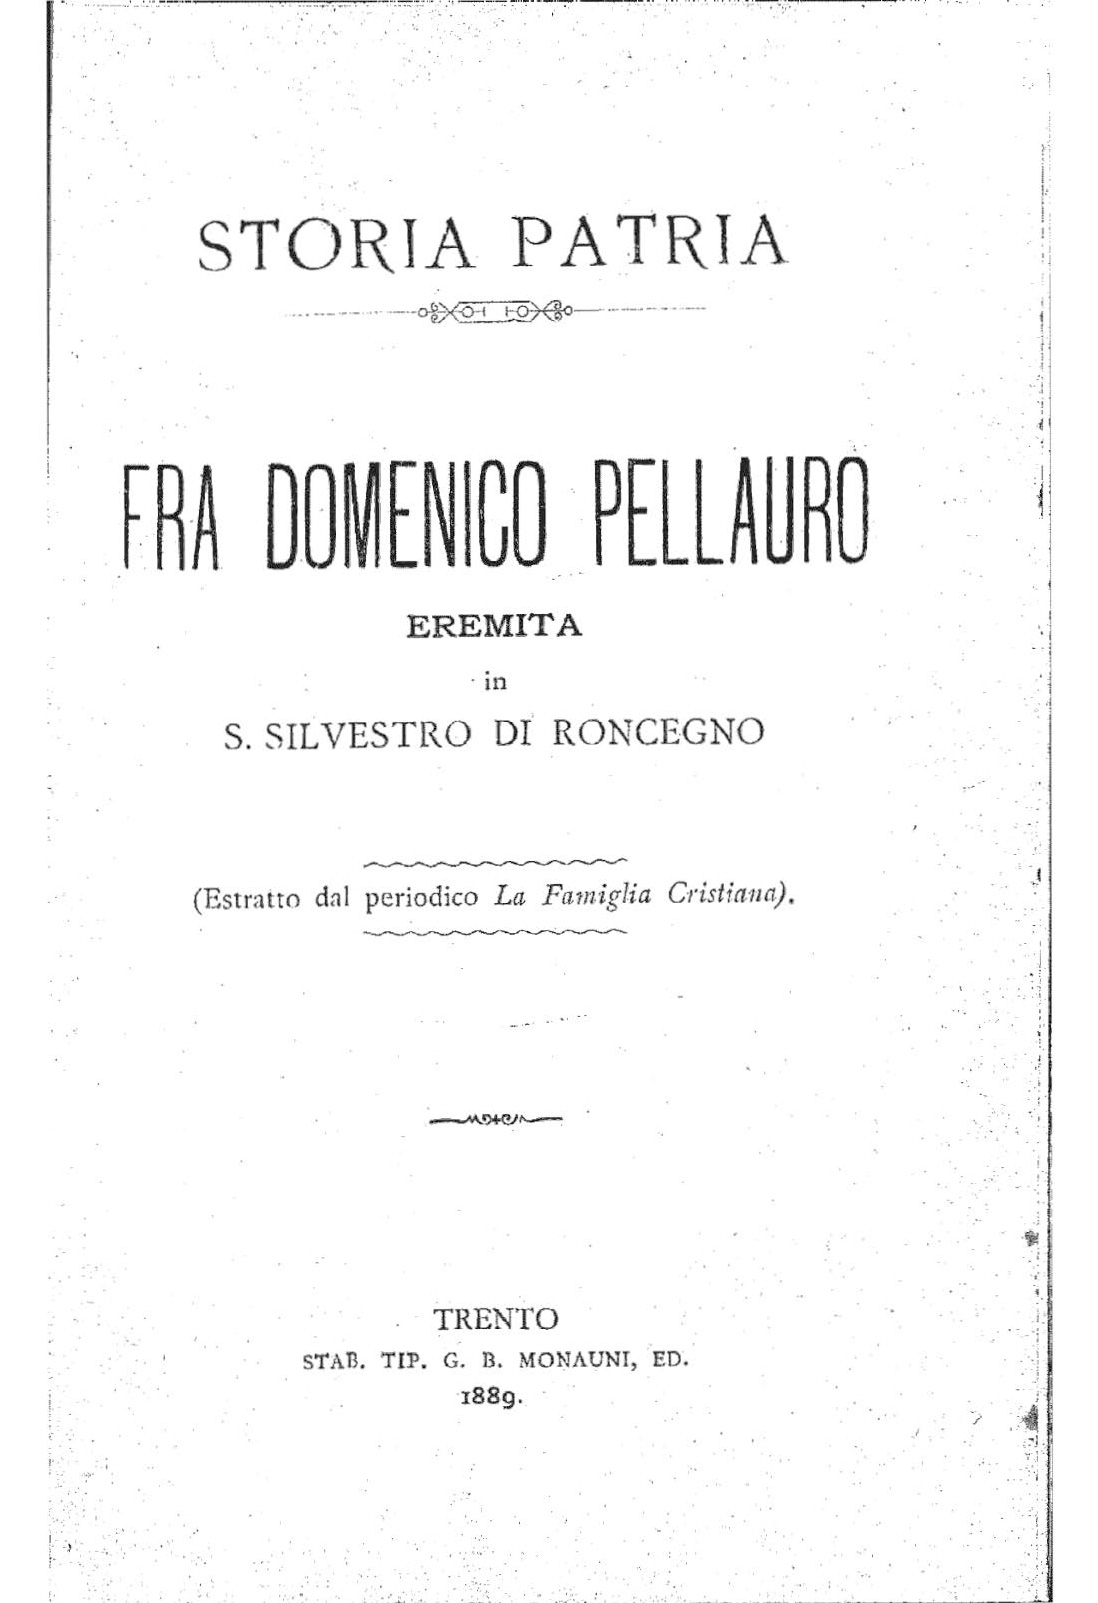 Fra Domenico Pellauro eremita in S. Silvestro di Roncegno